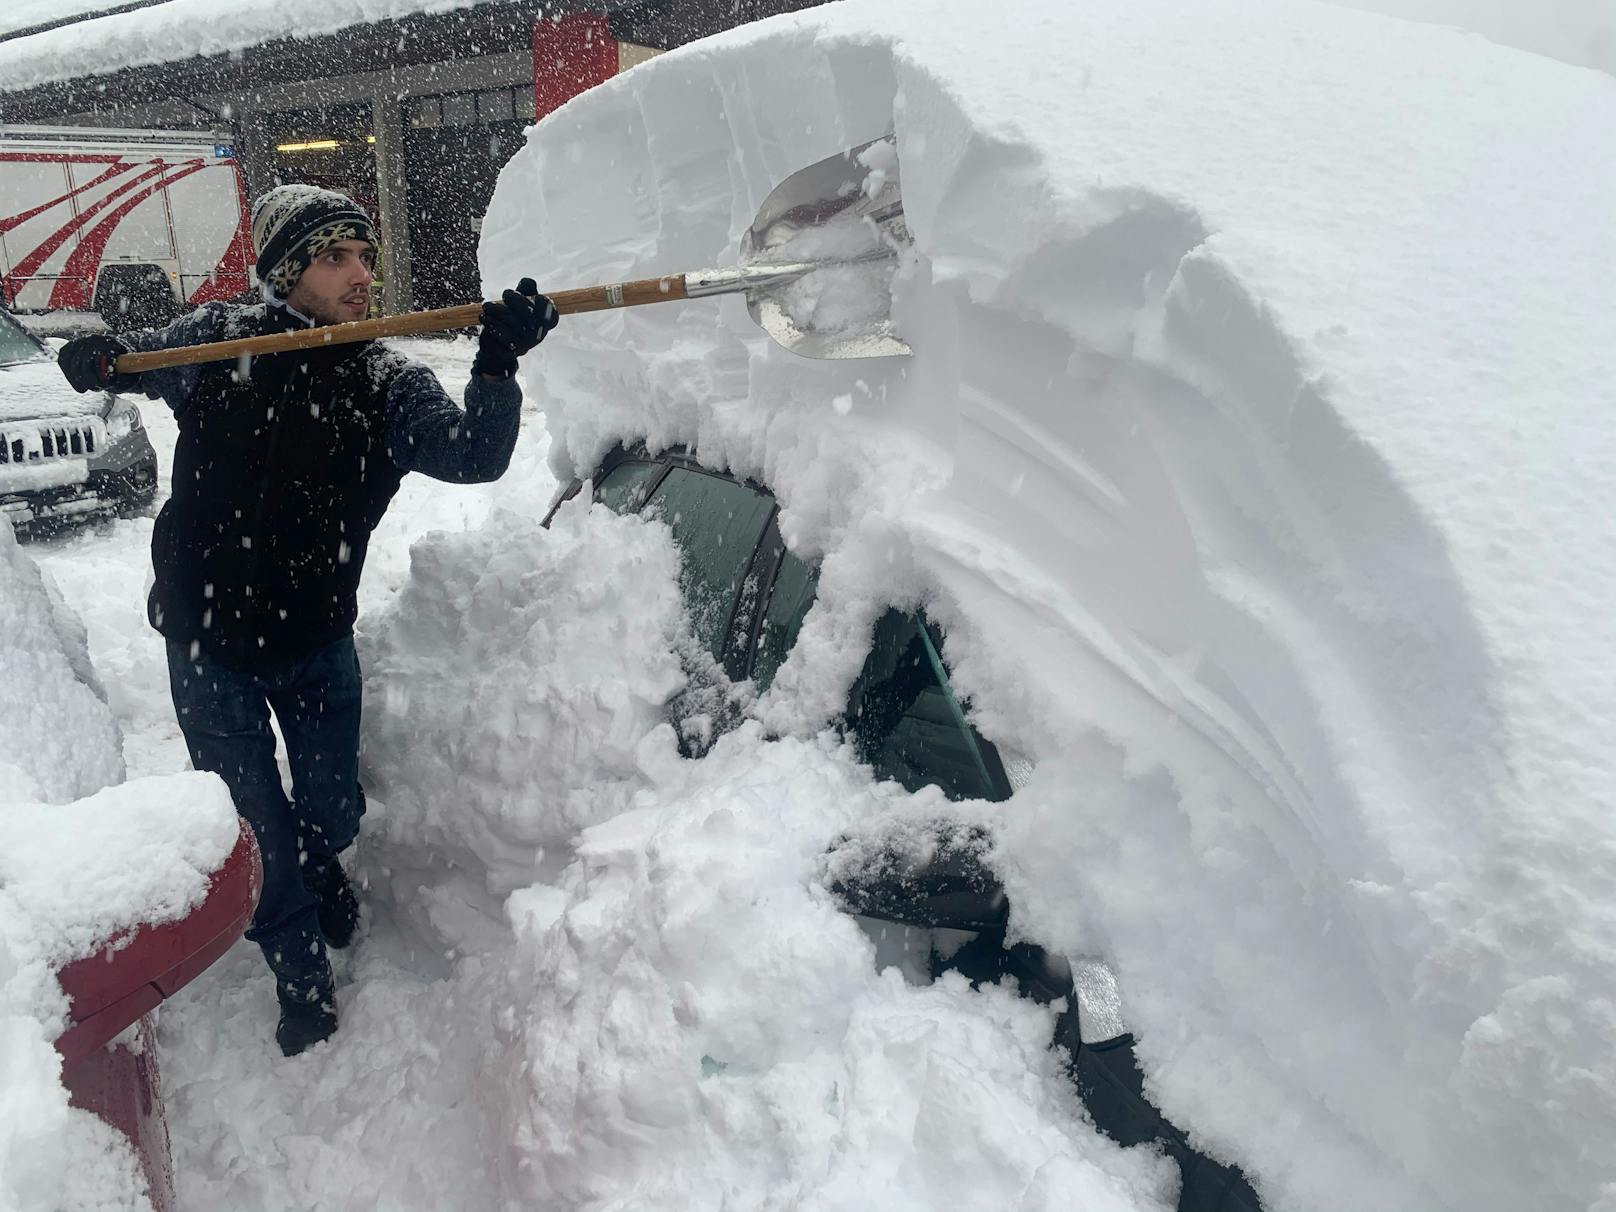  Patrick Werth befreit sein Auto in Silian von den Schneemassen.